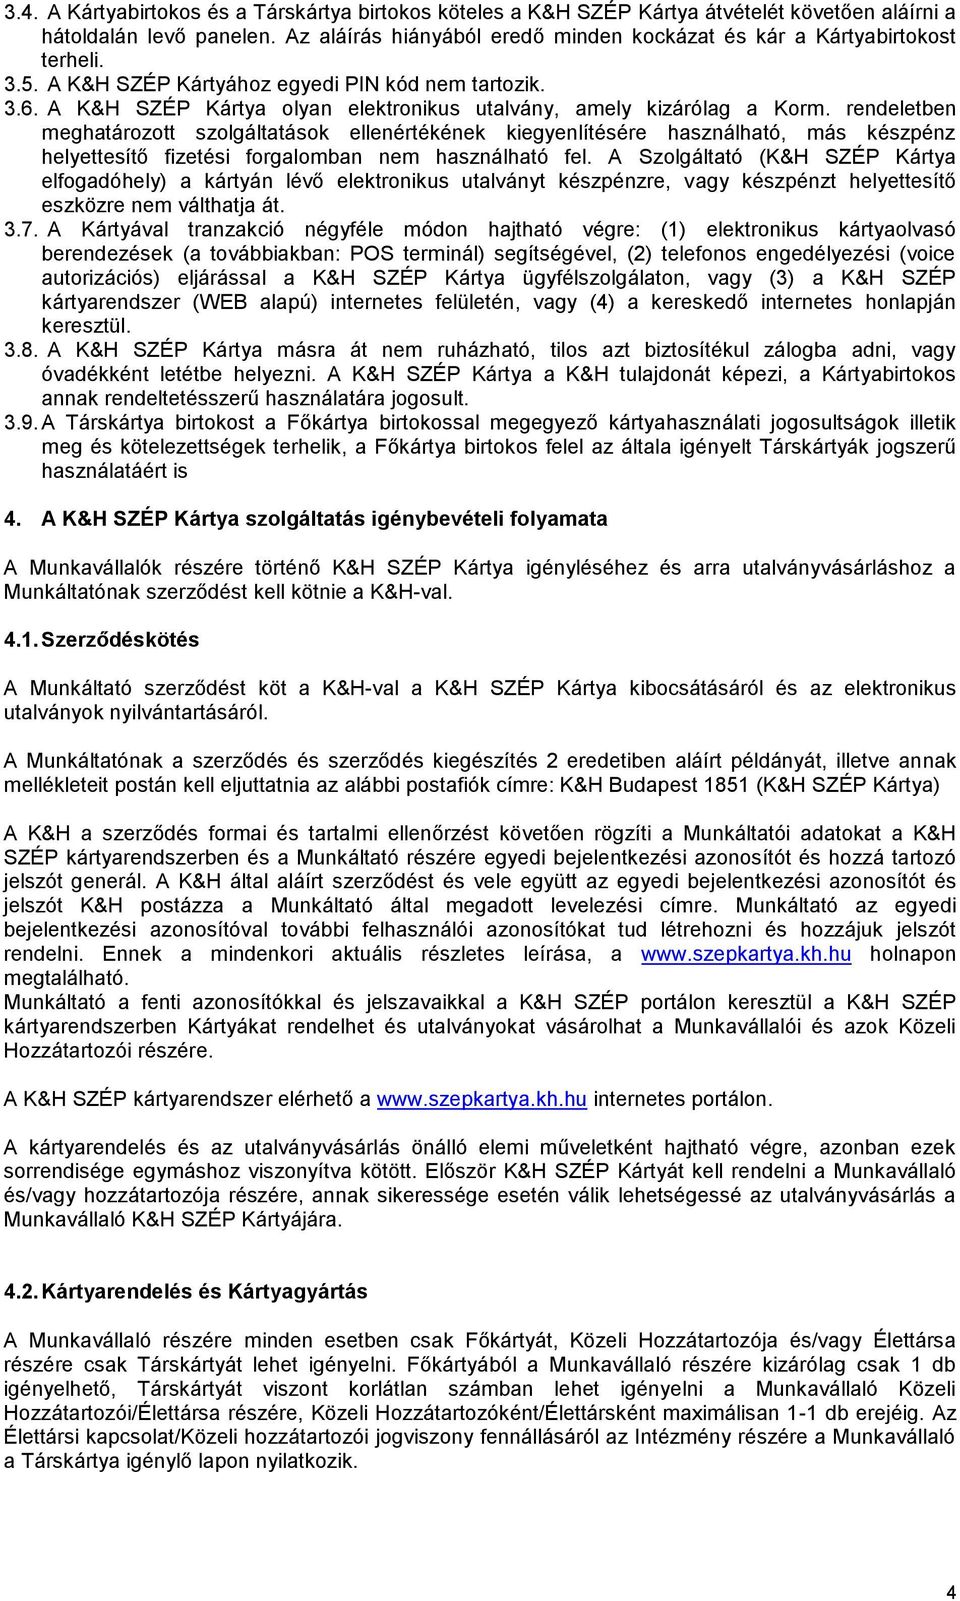 3. sz. melléklet: Tájékoztató a K&H Széchenyi Pihenő Kártya szolgáltatásról  - PDF Ingyenes letöltés